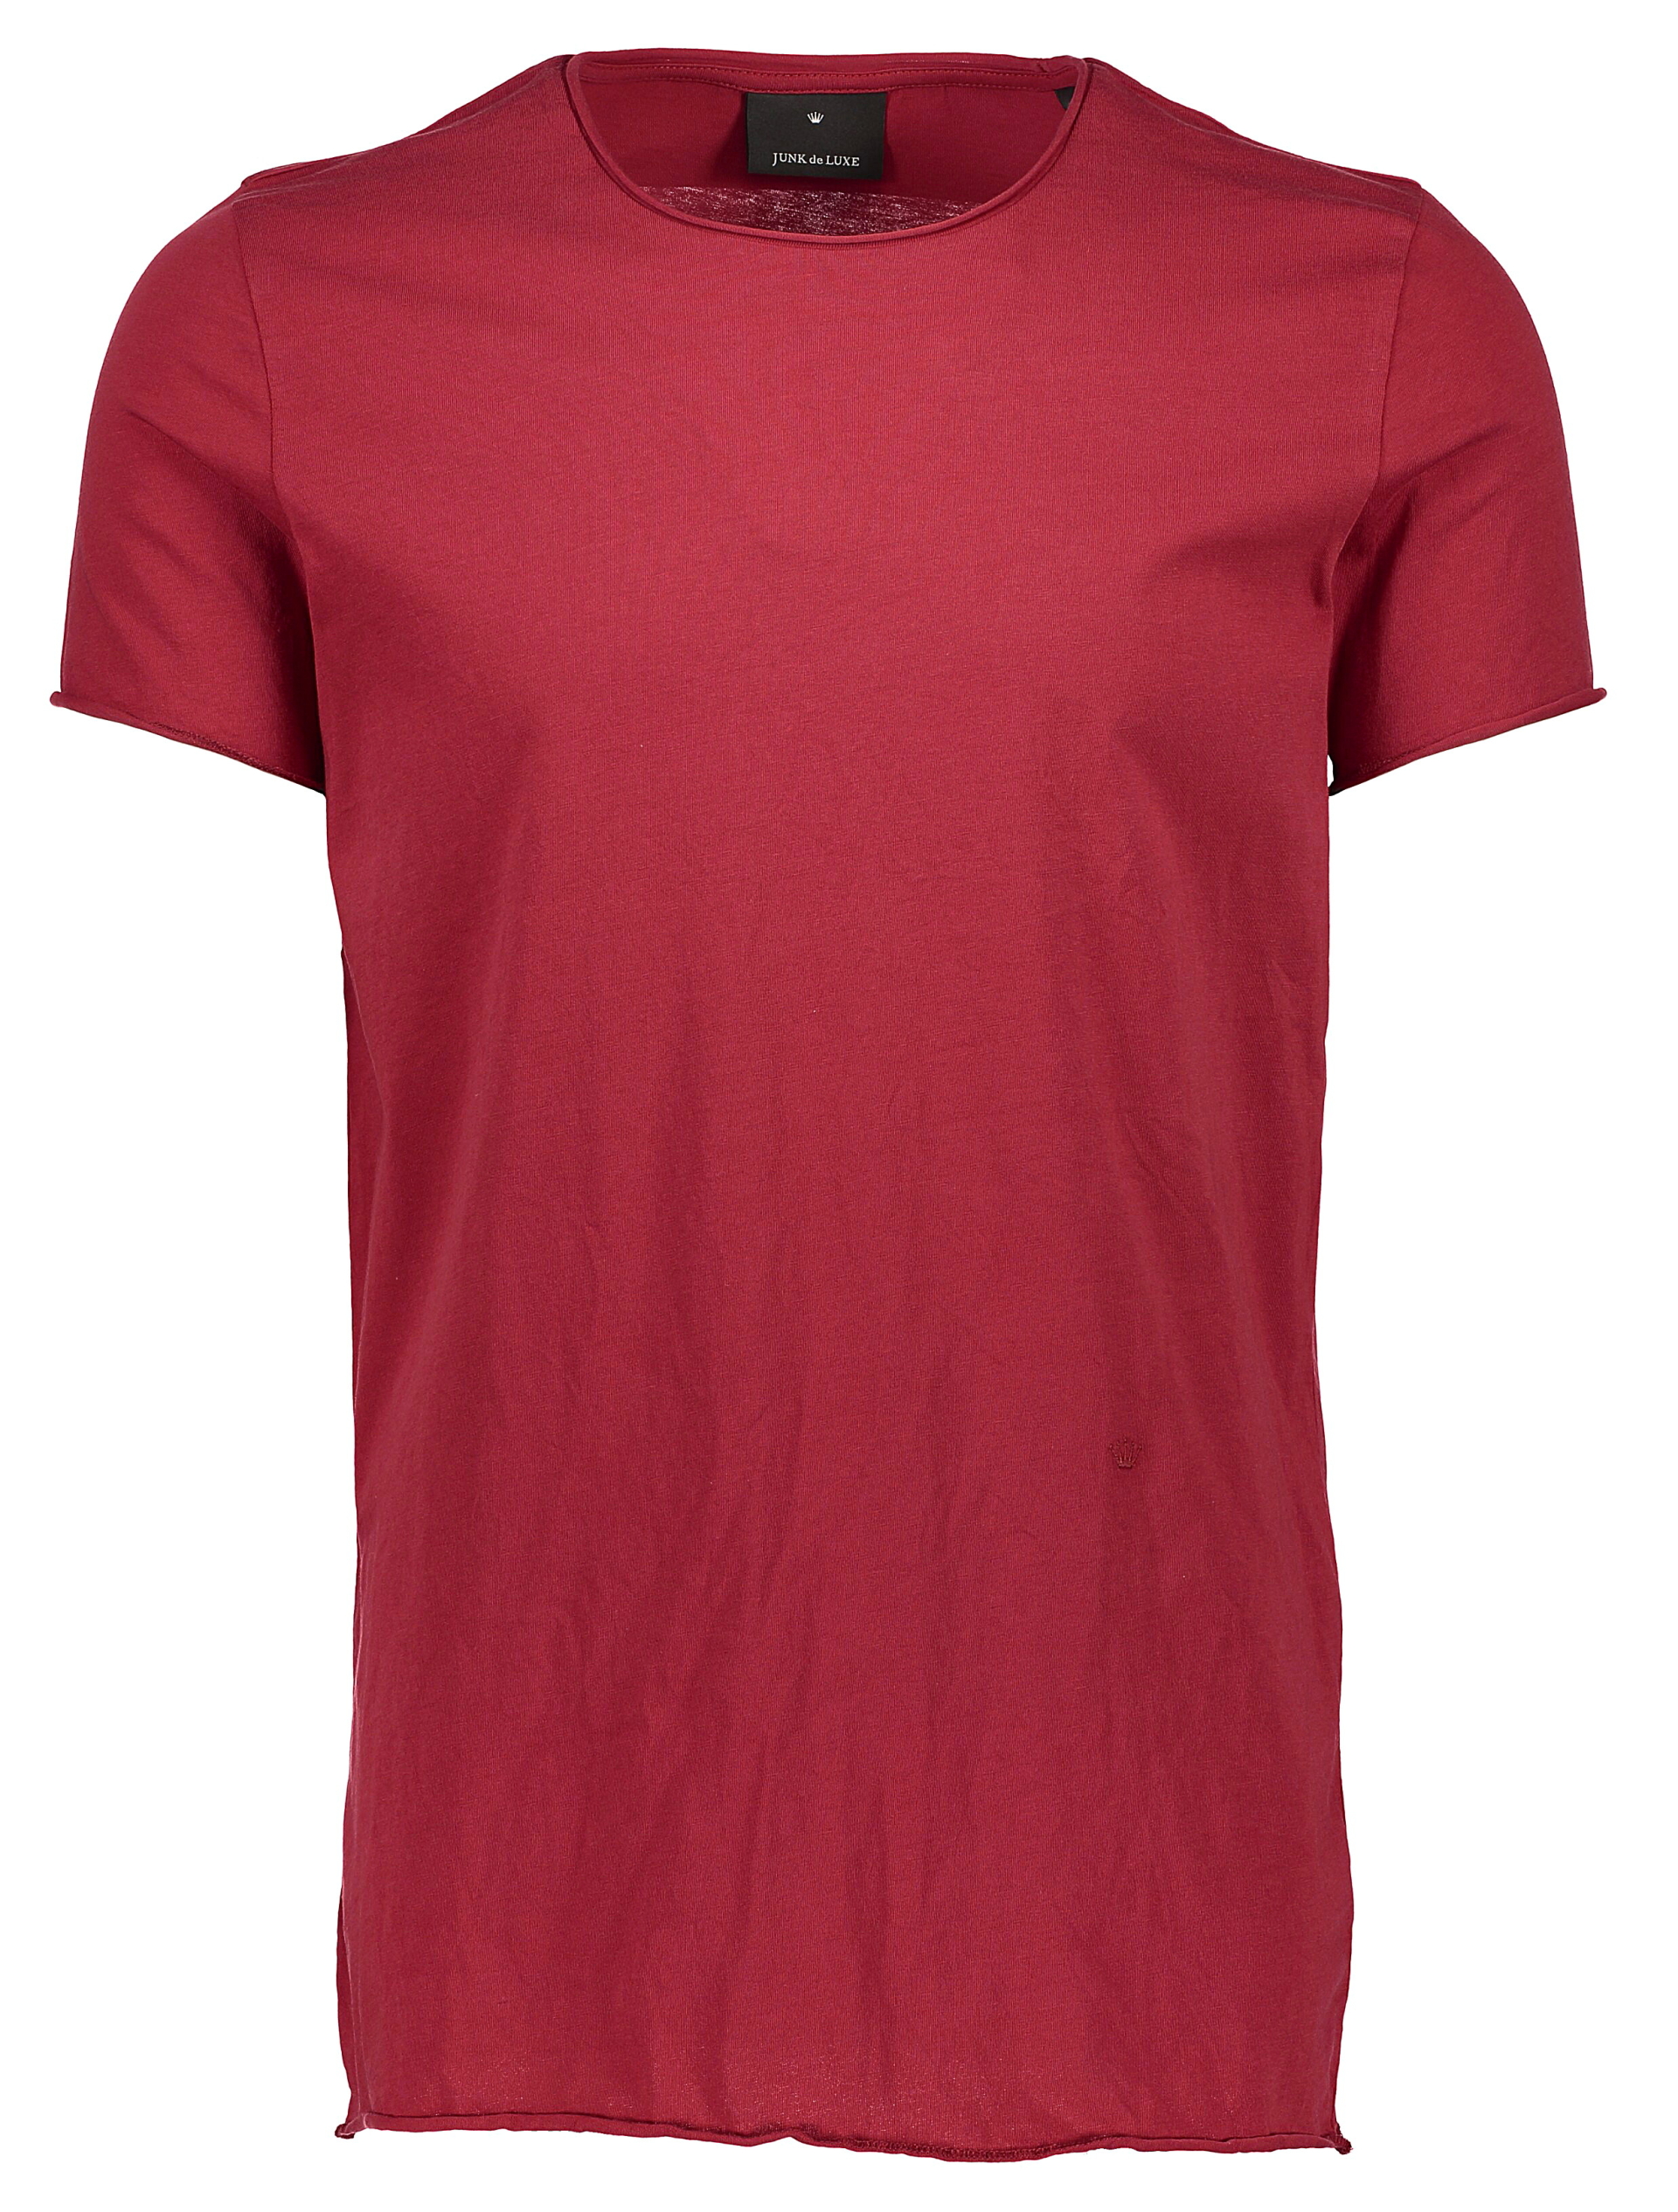 Junk de Luxe T-shirt röd / red